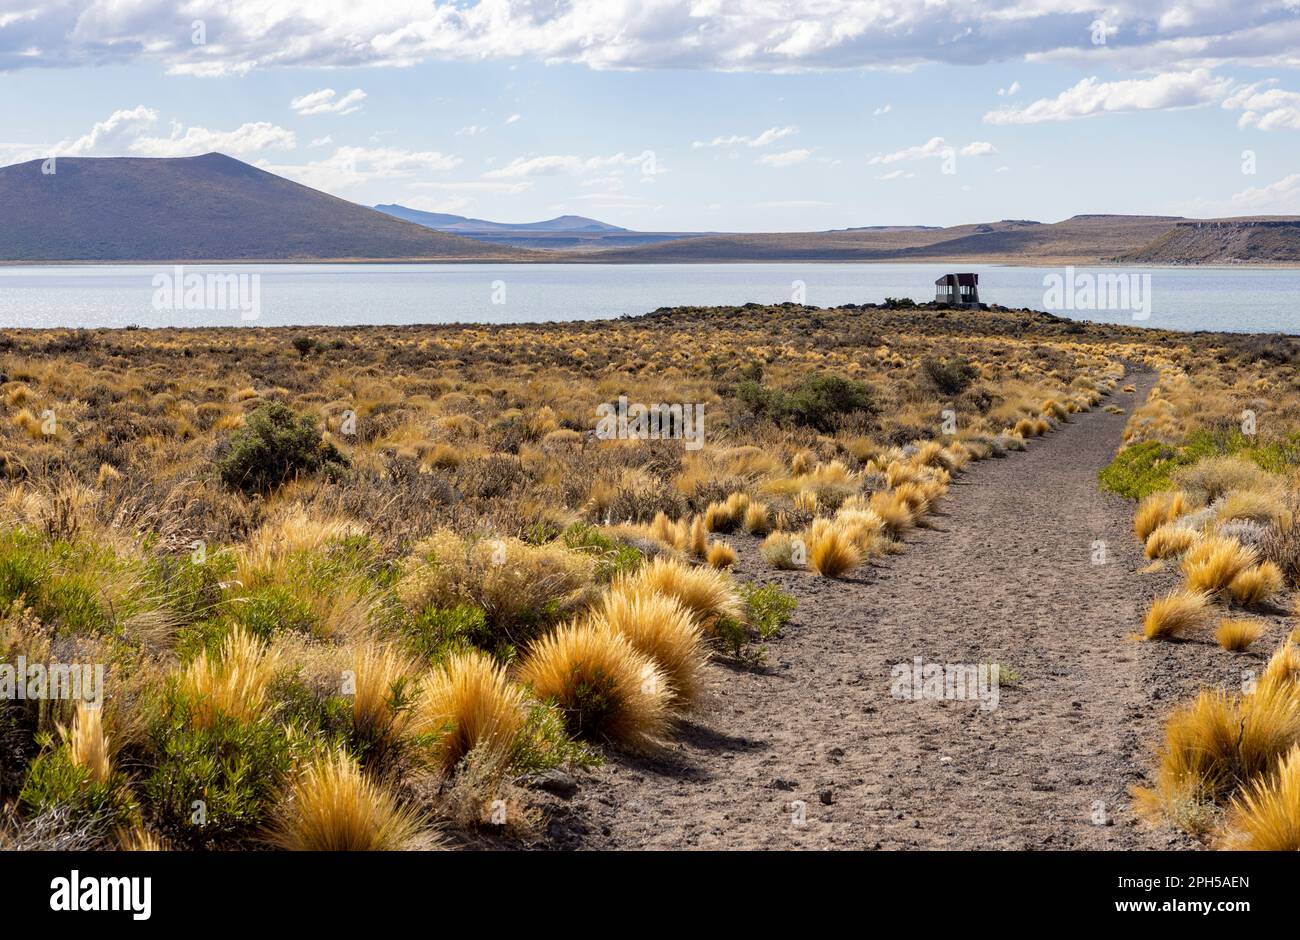 Parc national Laguna Blanca à Neuquén, Argentine - Voyager en Amérique du Sud Banque D'Images